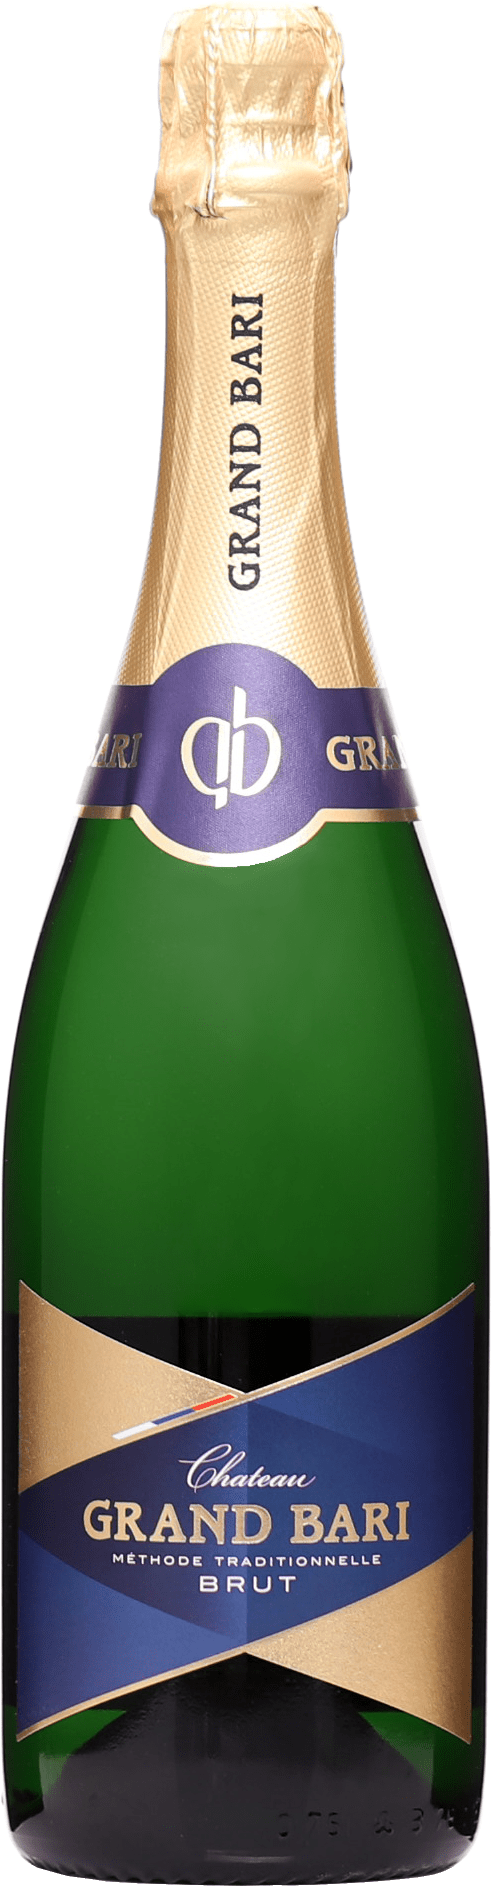 Chateau Grand Bari Sekt Brut 2019 13% 0,75l (čistá fľaša)